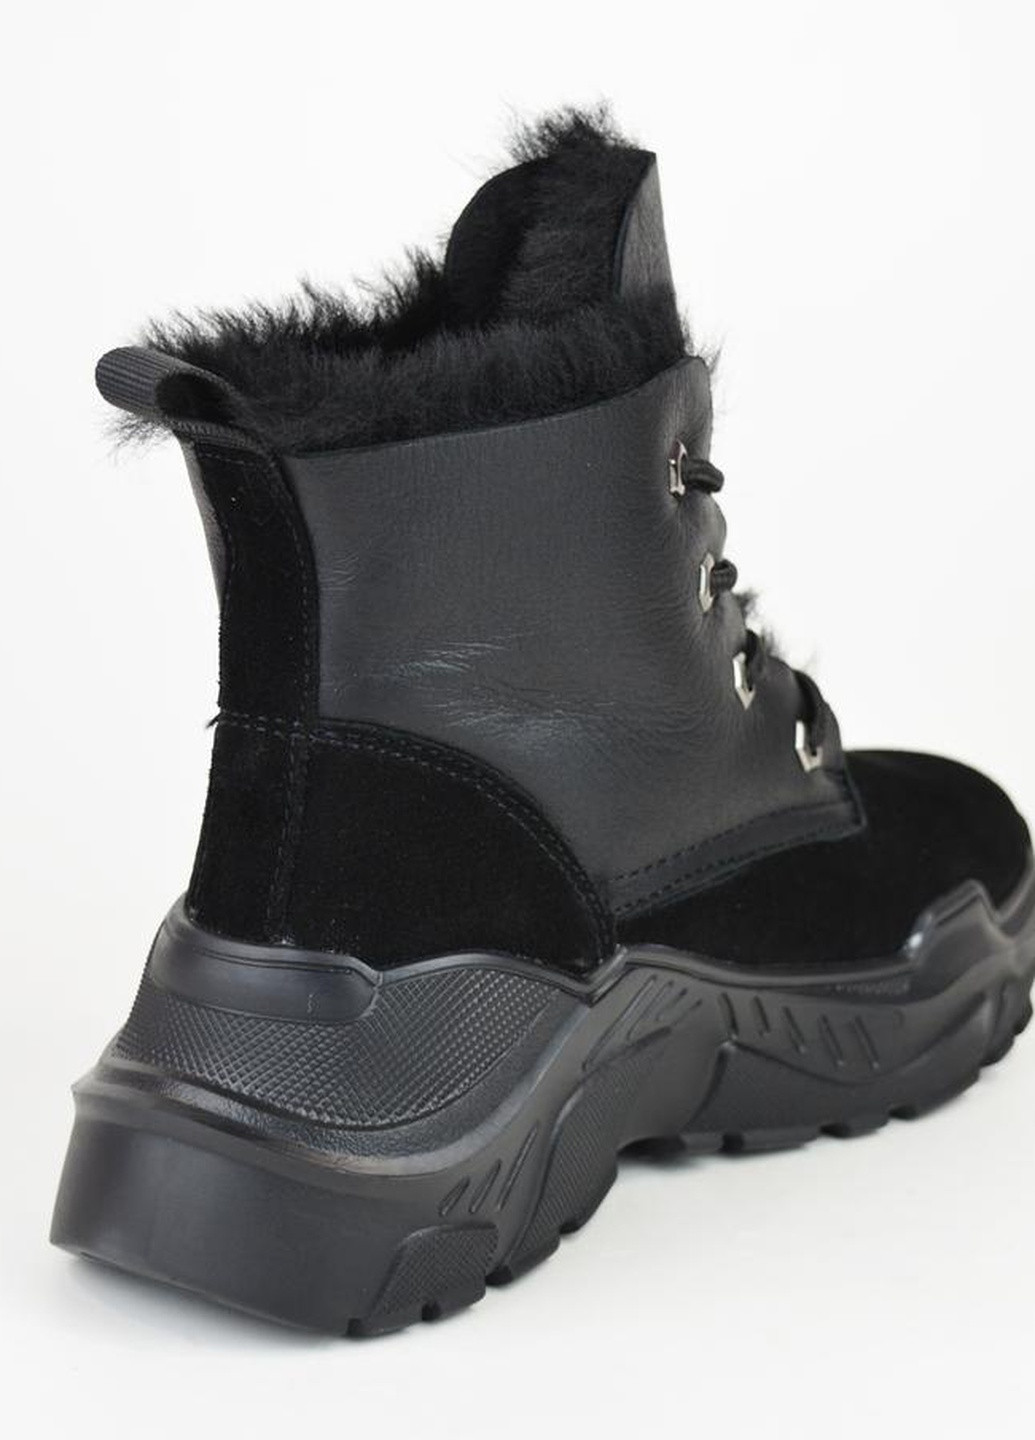 Зимние ботинки замшевые зимние спорт Prima d'Arte без декора из натуральной замши